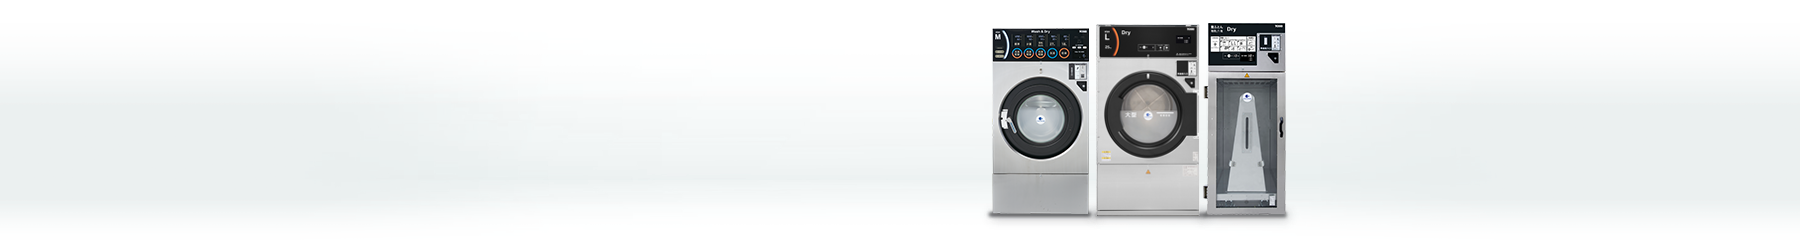 コインランドリー向け洗濯機・乾燥機・布団乾燥機